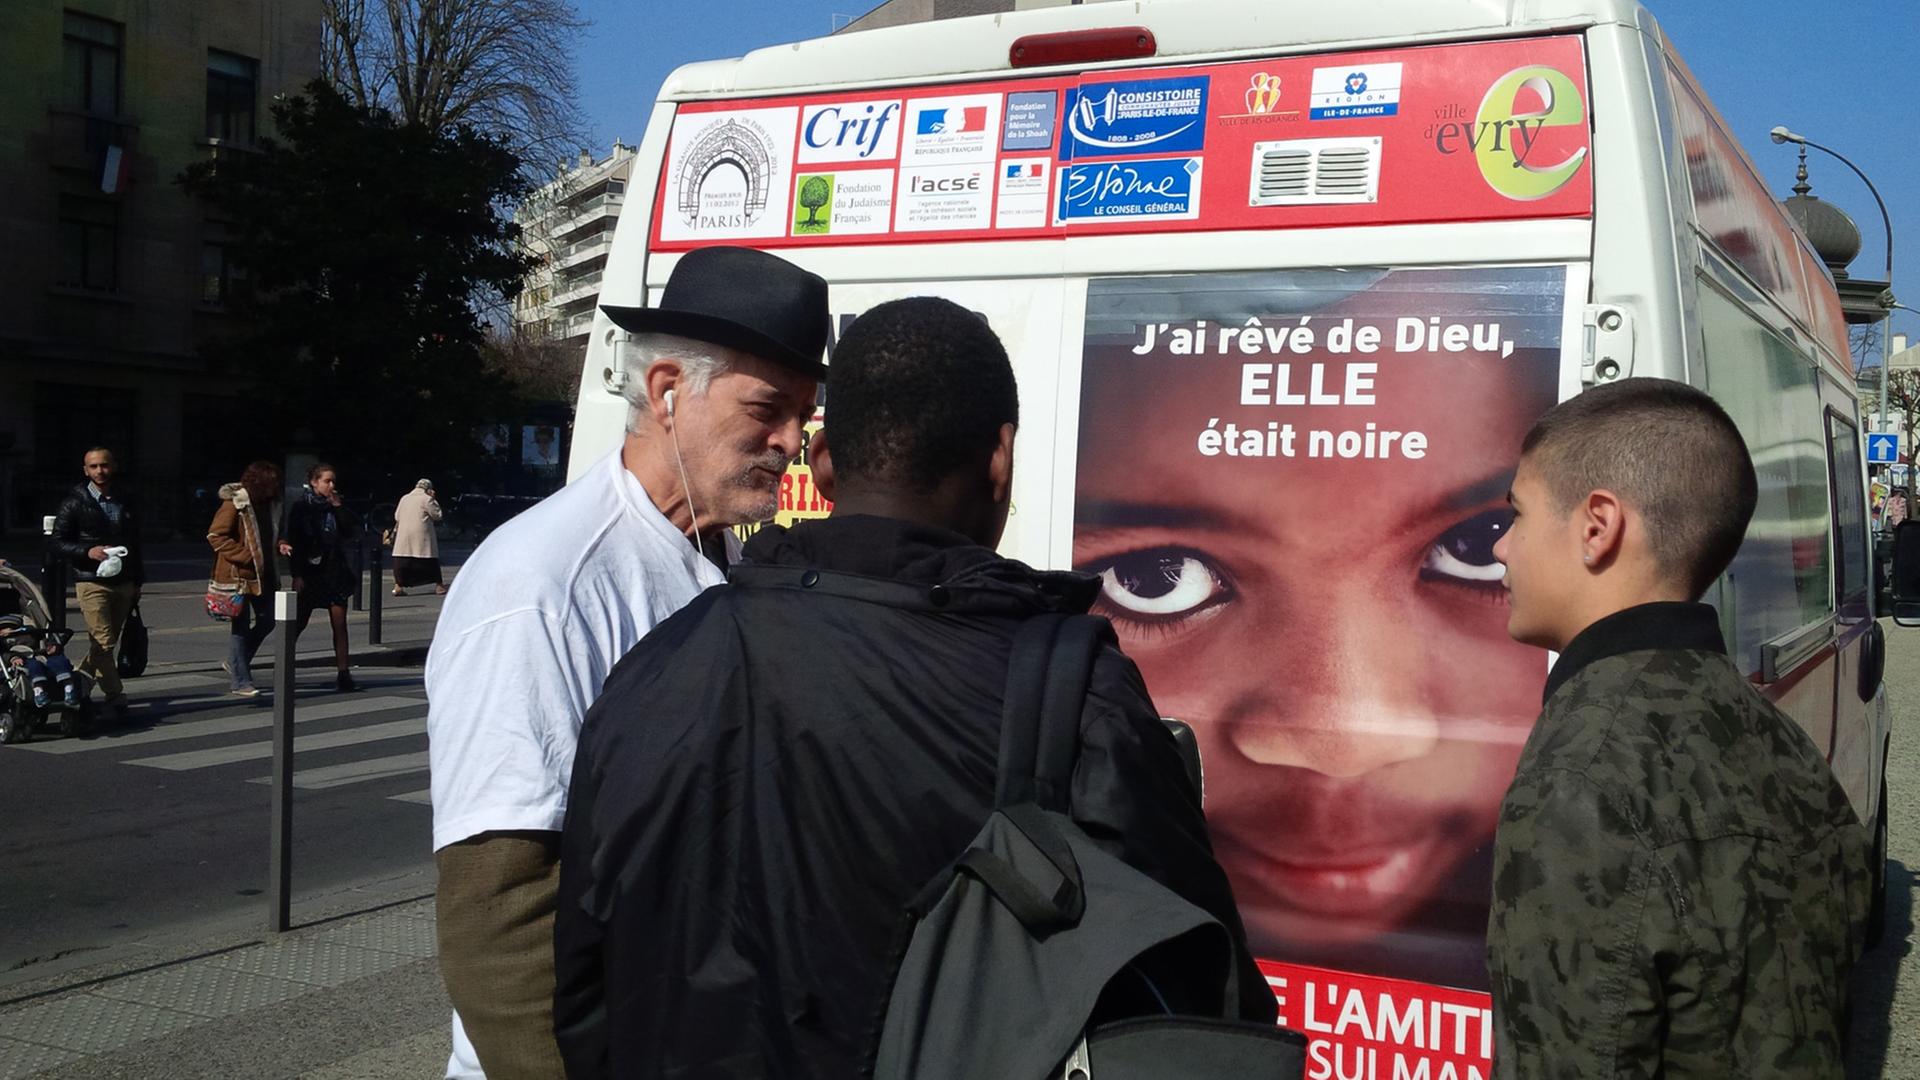 Der 72-jjährige Rabbi von Ris-Orangis, Michel Serfaty, vor seinem Bus, mit den er in die Vorstädte von Paris fährt, um mit Muslimen in Dialog zu treten,